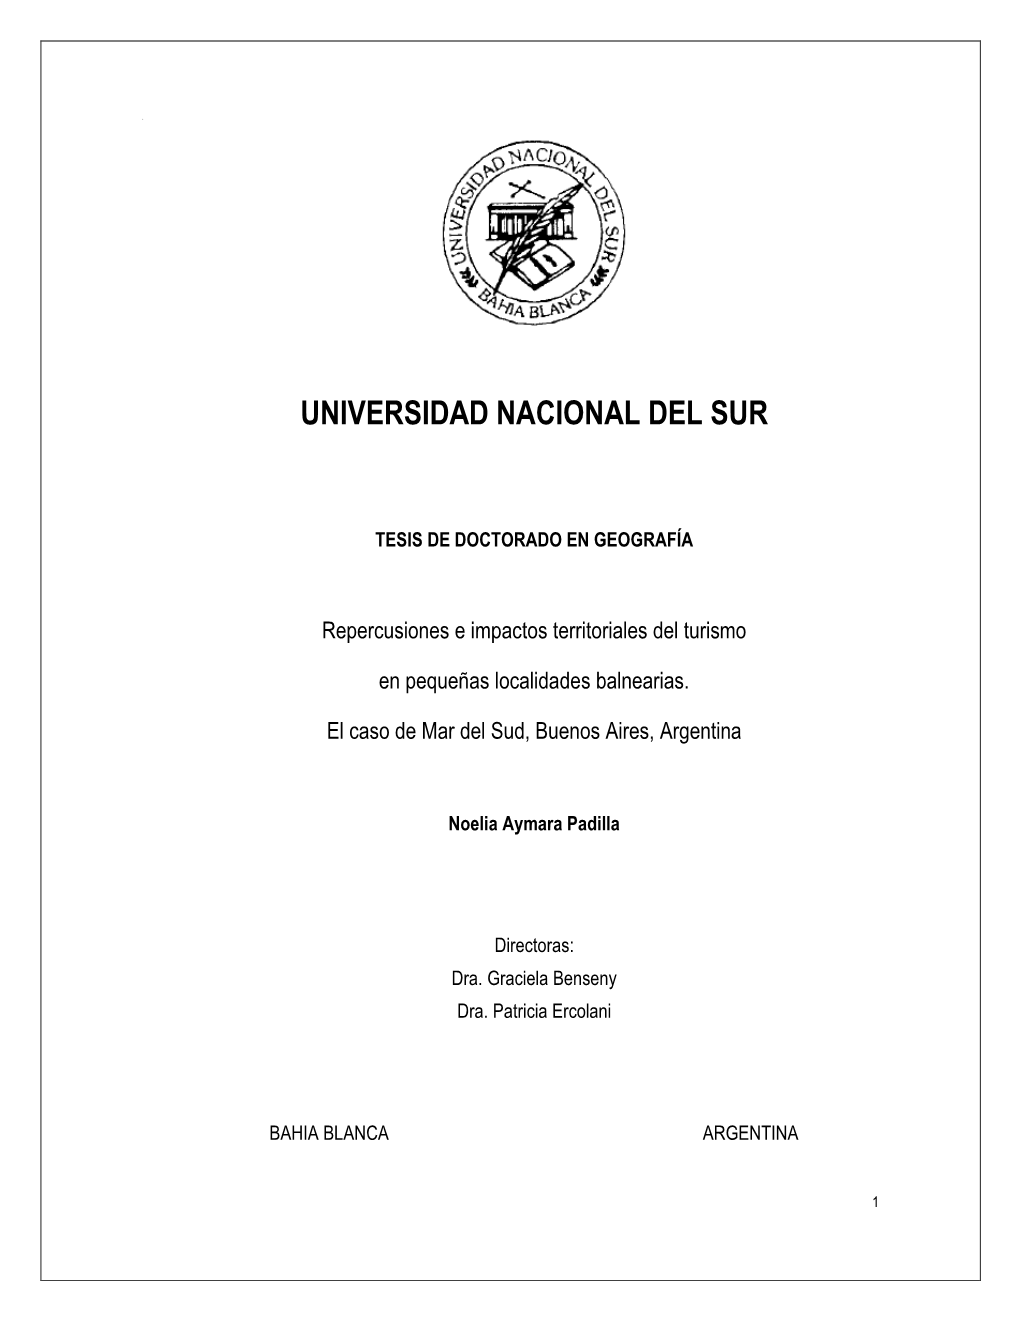 Tesis Doctoral De Benseny (2011) Se Analiza El Proceso De Fragmentación Territorial Costera De La Provincia De Buenos Aires, Resultando